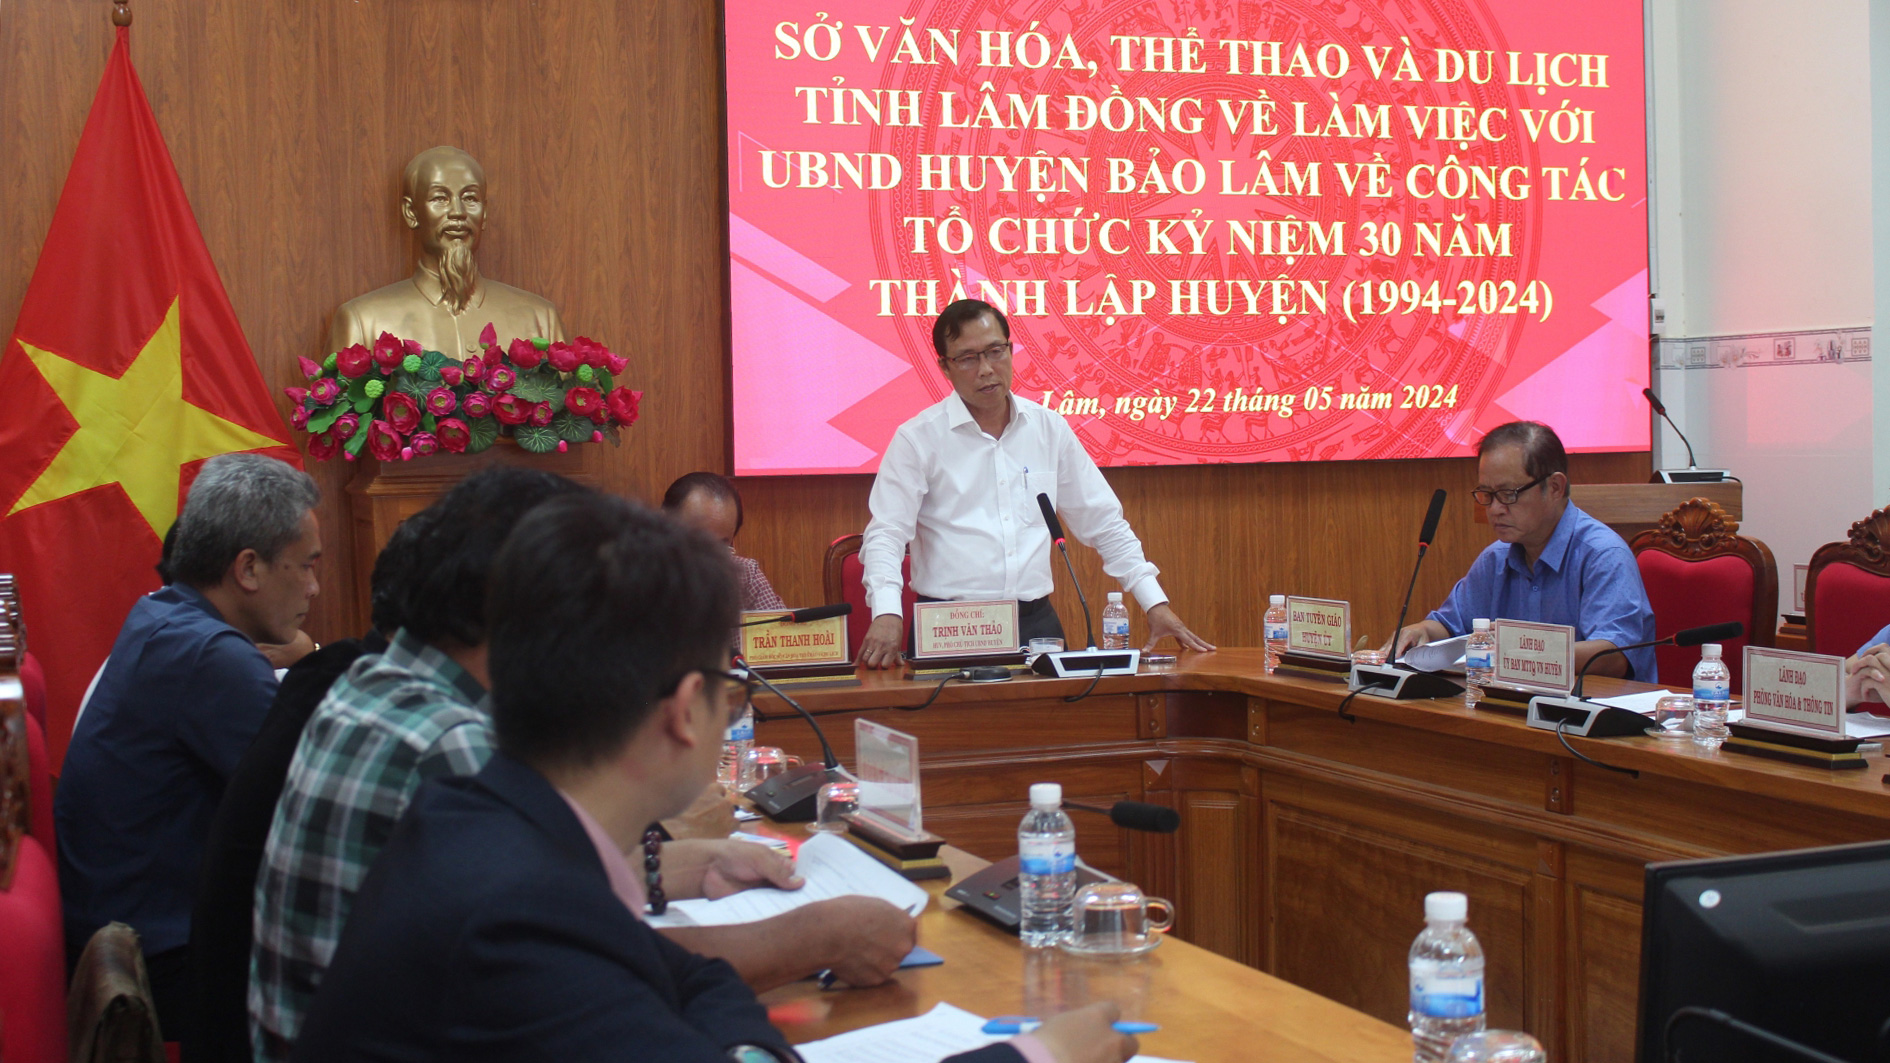 Ông Trịnh Văn Thảo - Phó Chủ tịch UBND huyện đánh giá cao sự hỗ trợ, giúp đỡ của Sở Văn hóa - Thể thao và Du lịch dành cho Bảo Lâm 